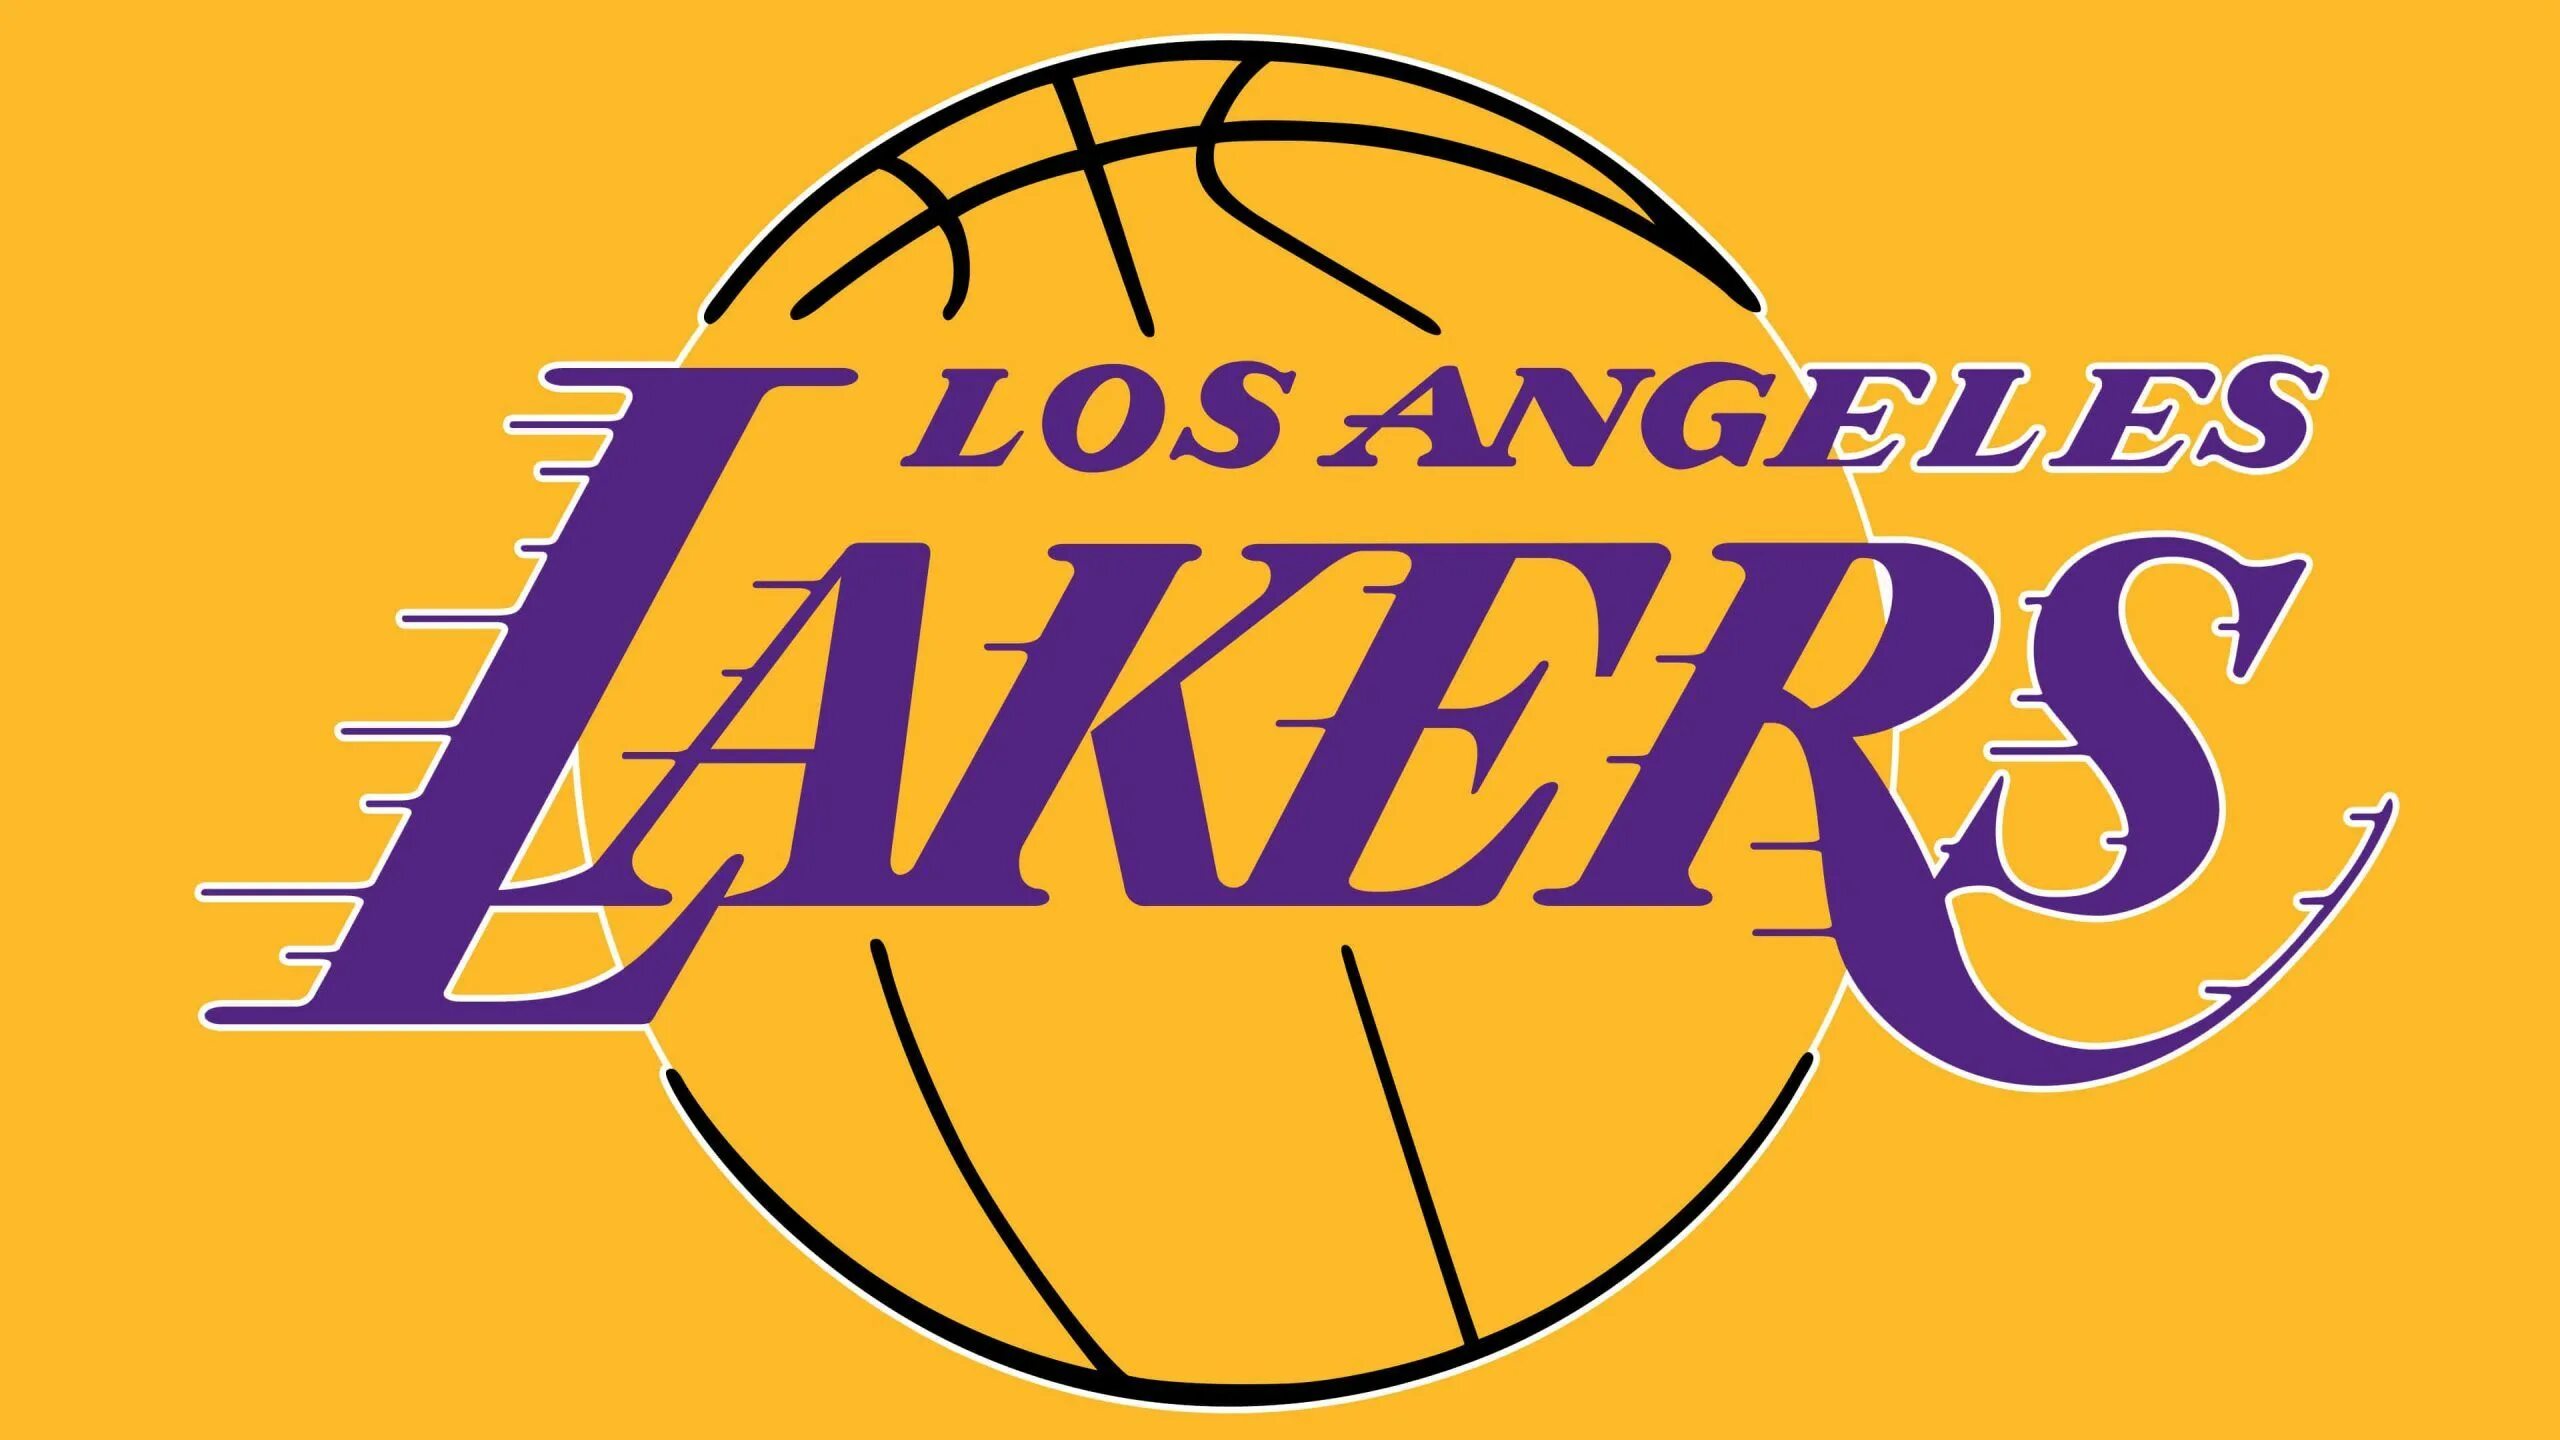 Los angeles 52 текст. Баскетбольный клуб Лос-Анджелес Лейкерс лого. Лос Анджелес Лейкерс эмблема. Баскетбольная команда Лейкерс логотип. Лос-Анджелес Лейкерс надпись.